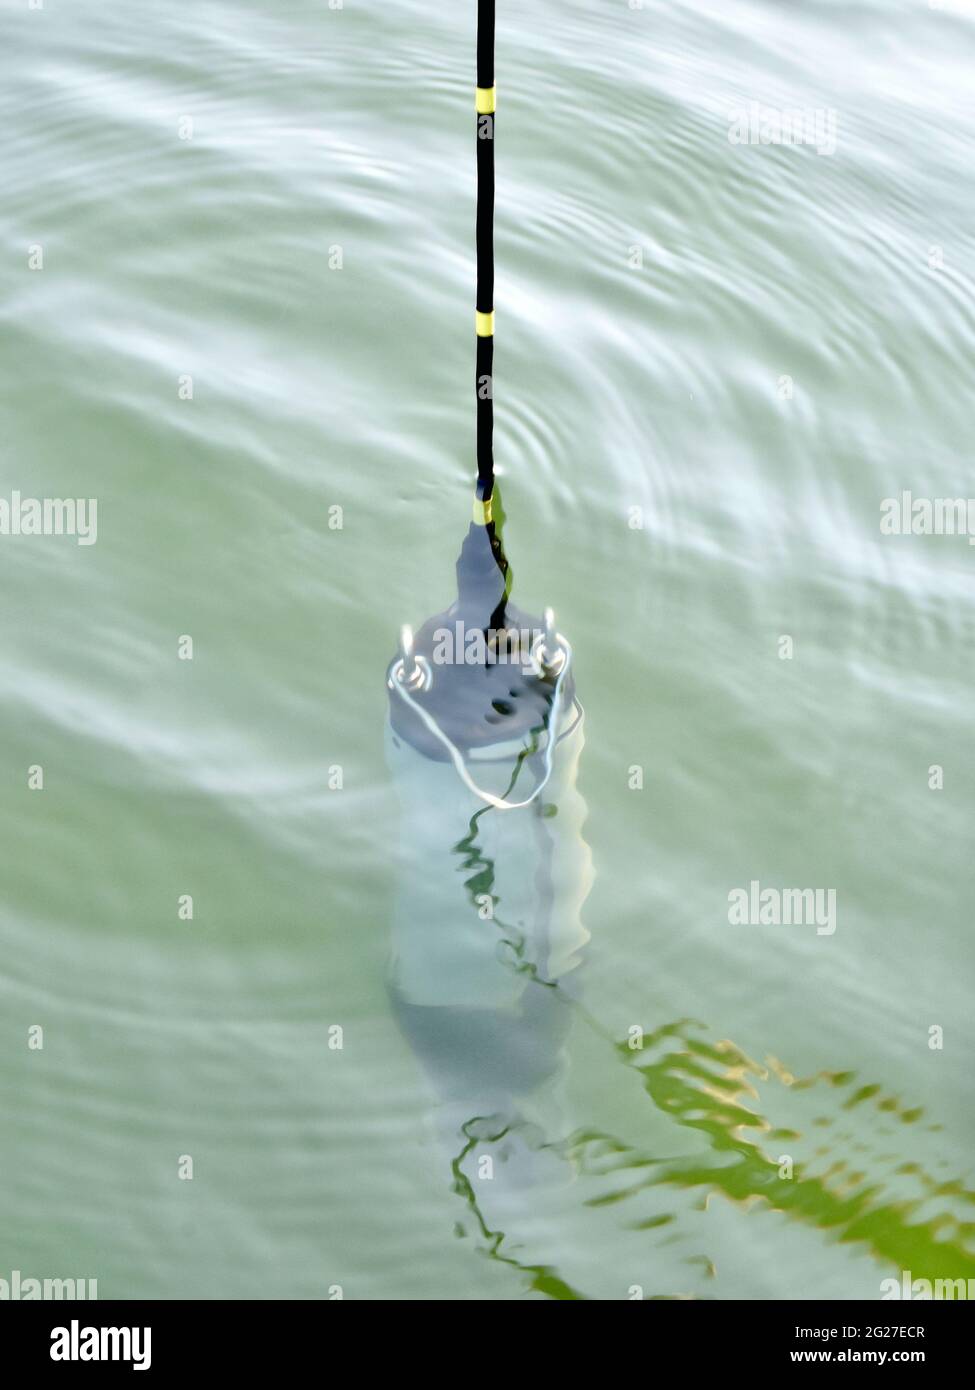 Un sonde di monitoraggio della qualità dell'acqua viene abbassato in un corpo idrico per raccogliere dati sulle caratteristiche fisiche della chimica dell'acqua. Foto Stock